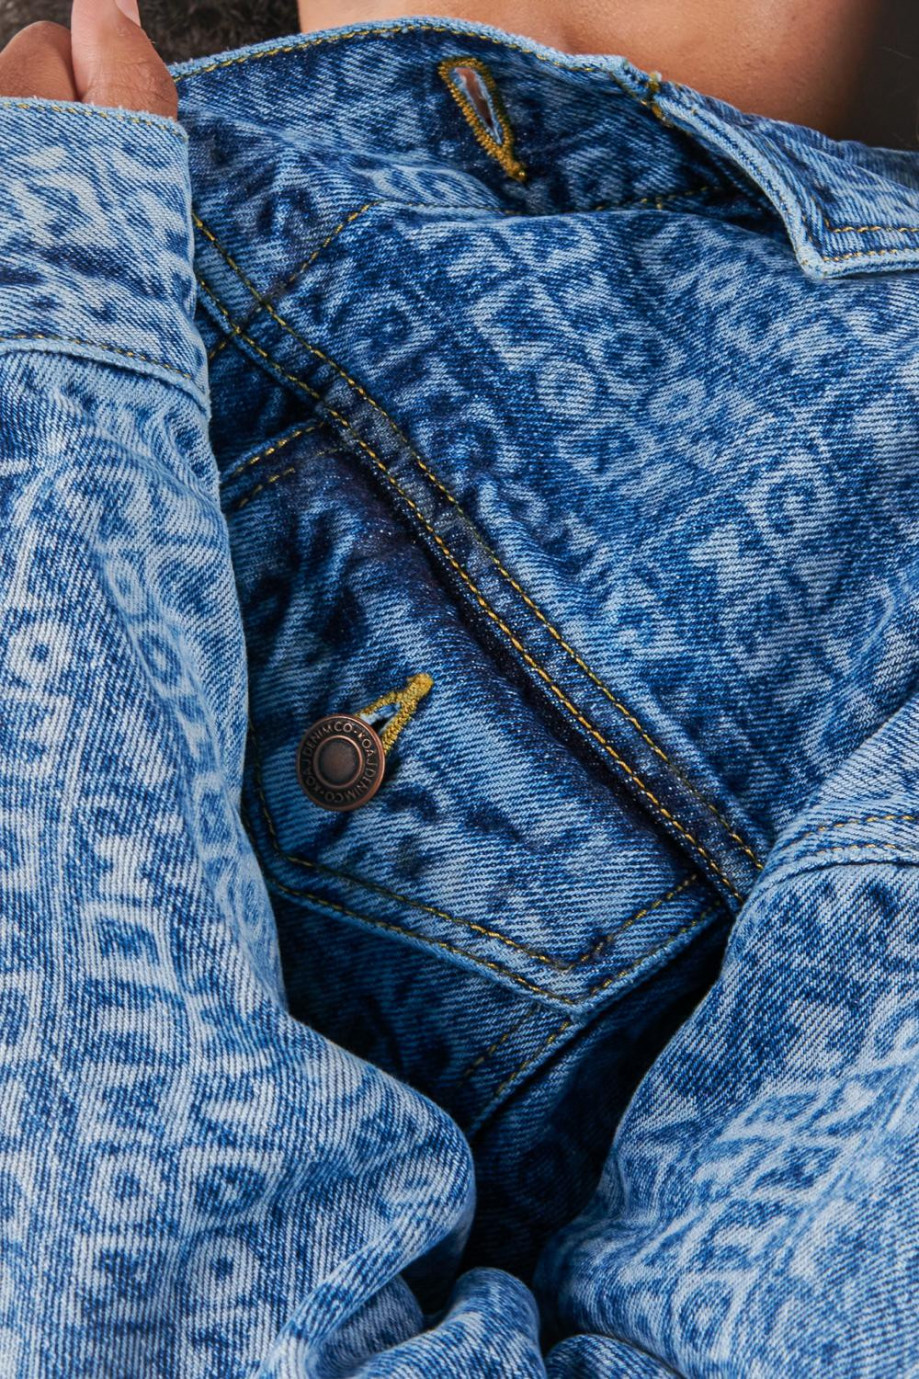 Chaqueta azul medio en jean con diseños de Cartoon Network